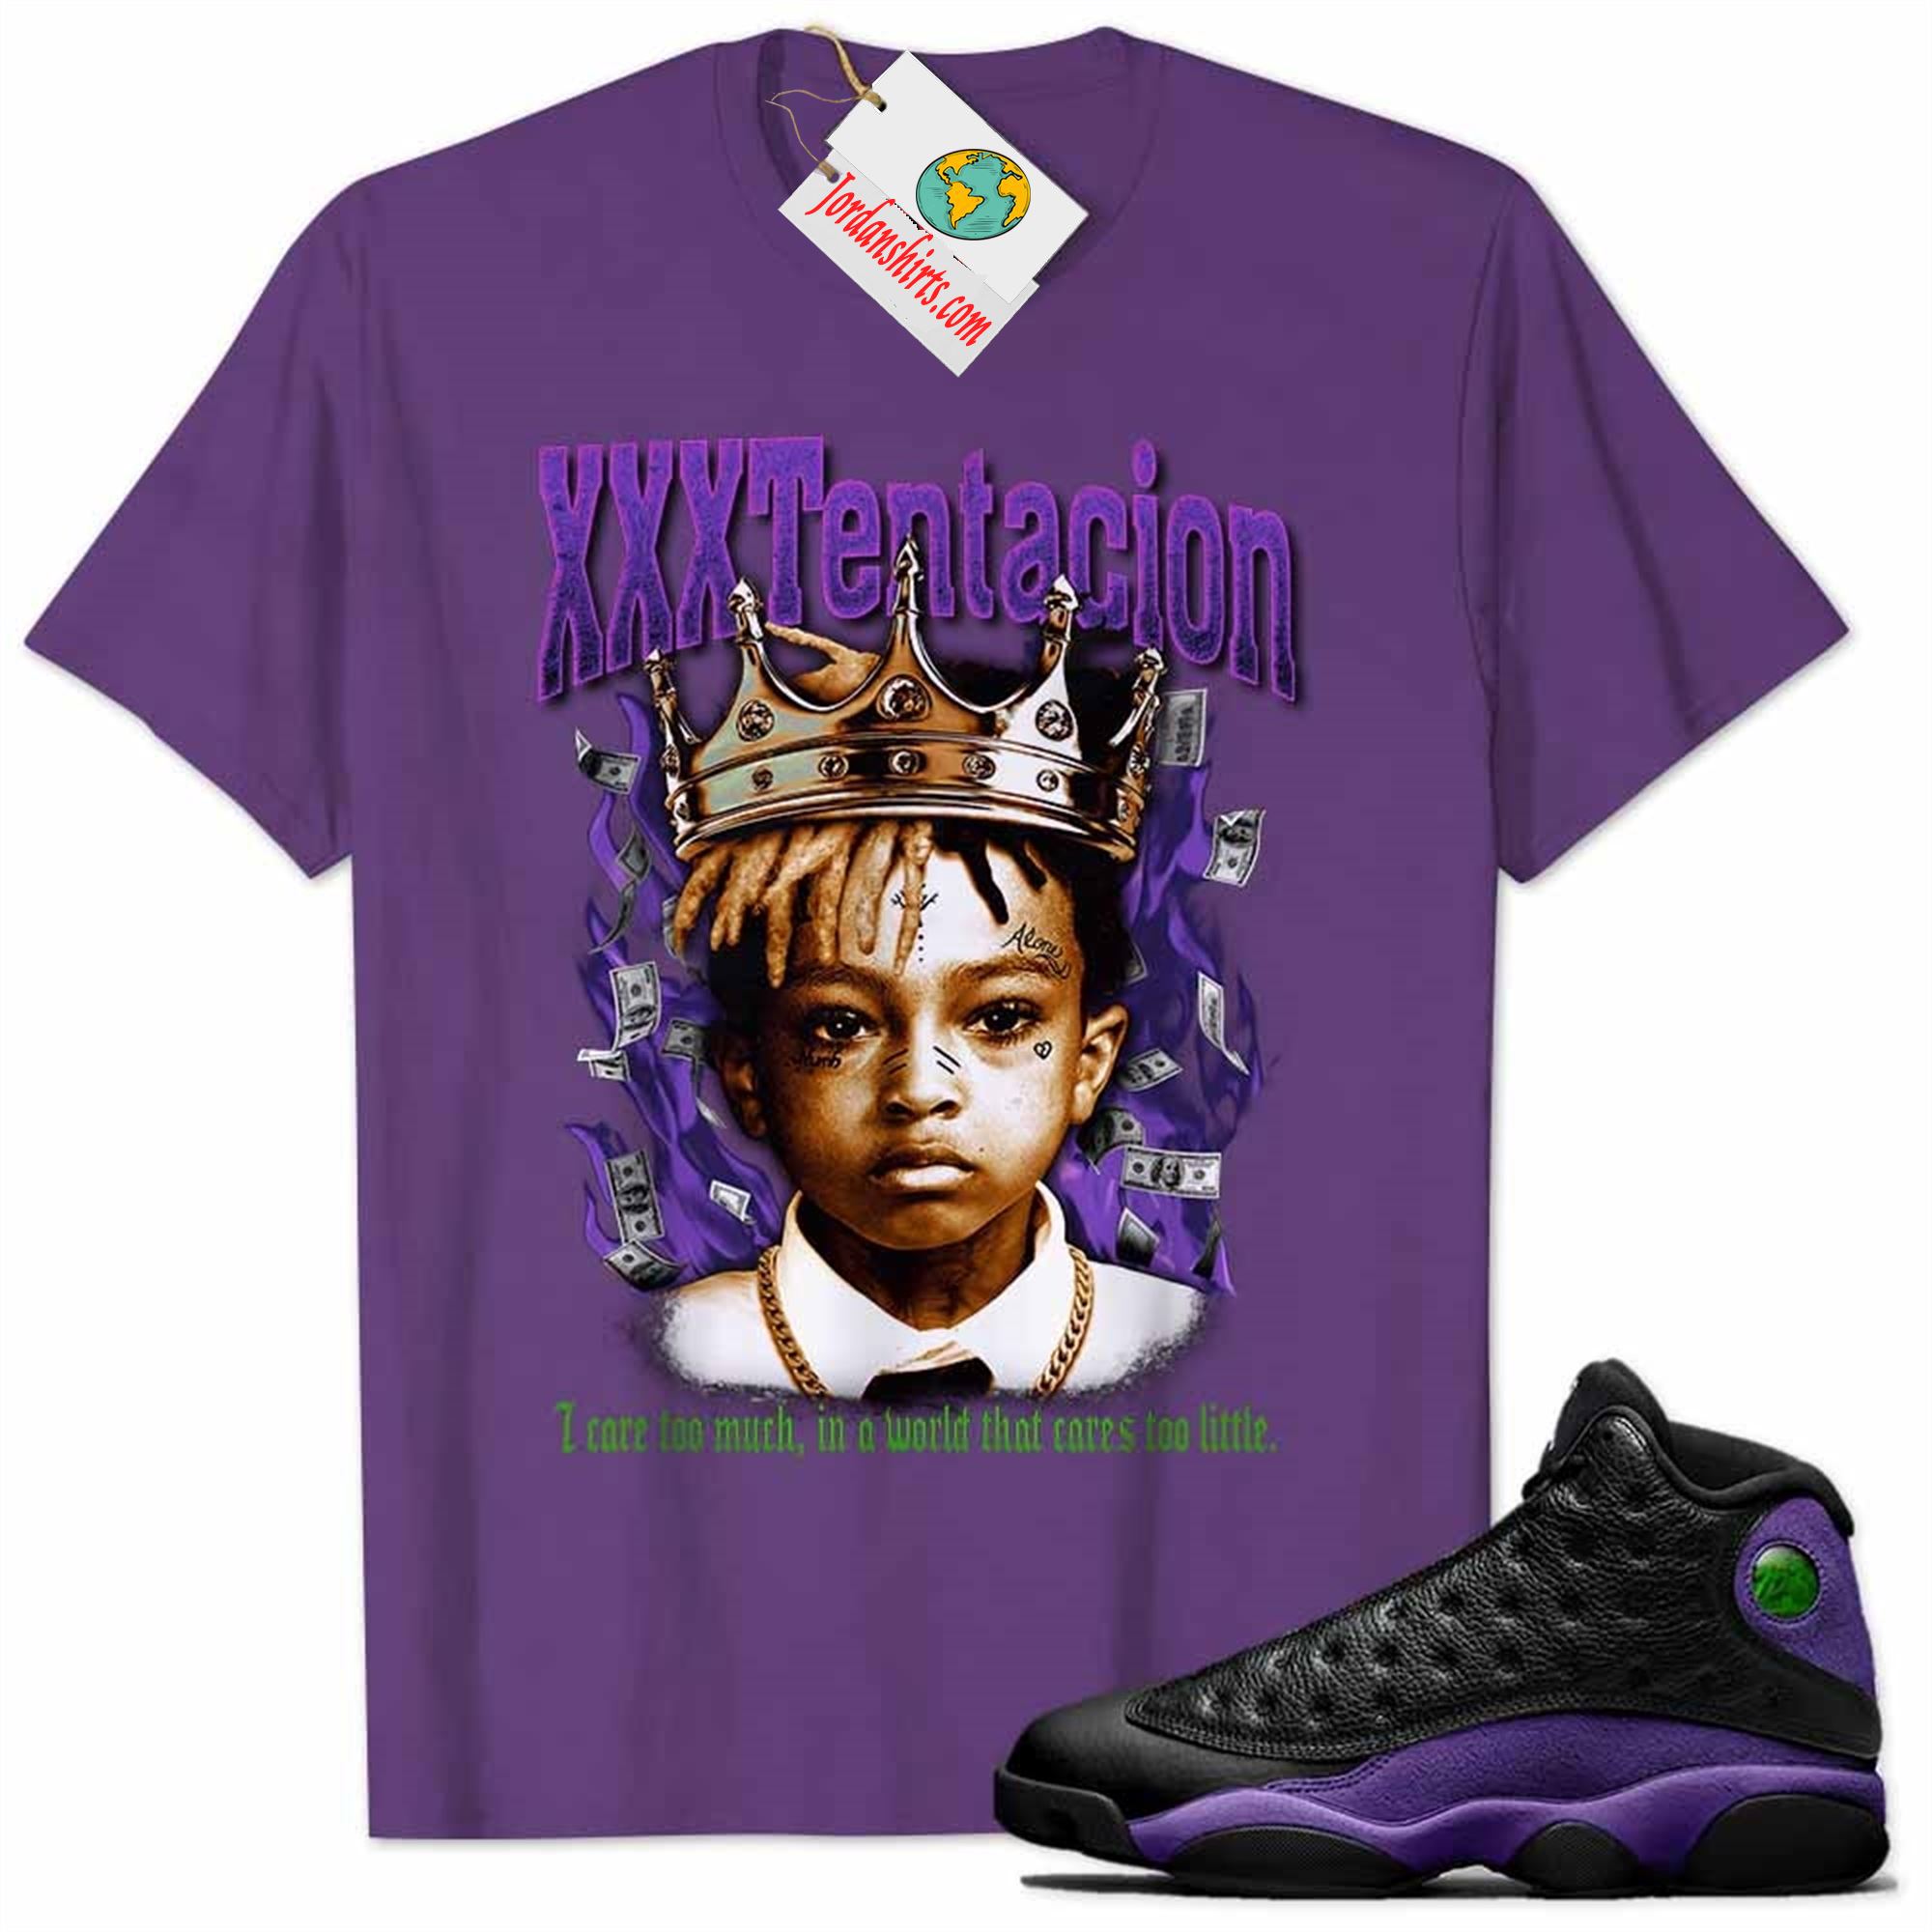 Jordan 13 Shirt, Xxxtentacion Rapper Graphic Purple Air Jordan 13 Court Purple 13s Size Up To 5xl